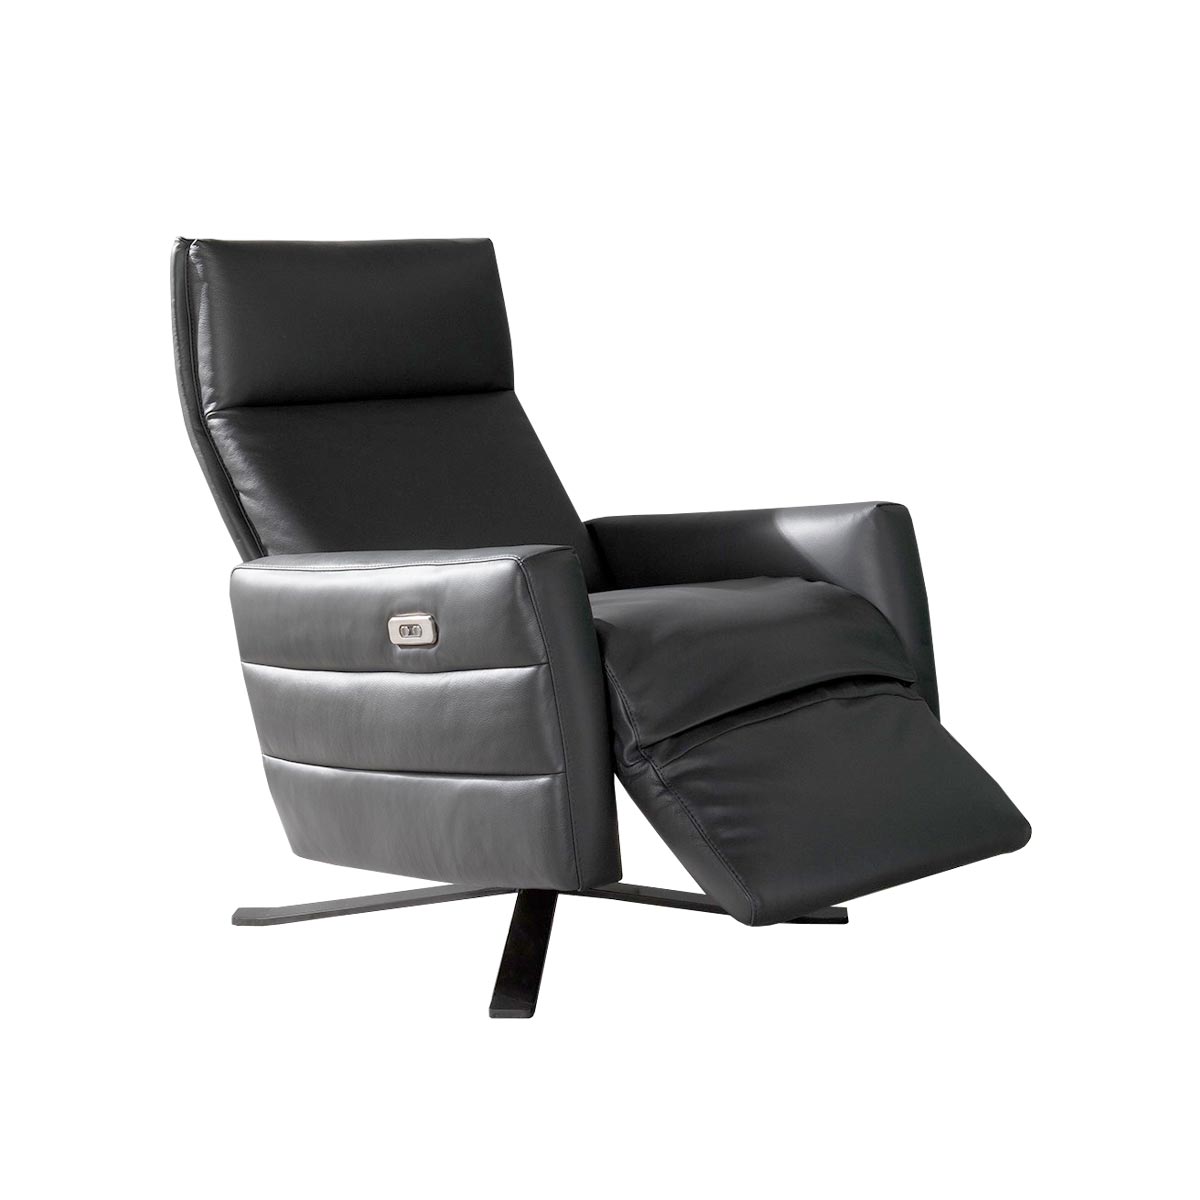 Istante sillón reclinable en piel. Muebles Italianos variant